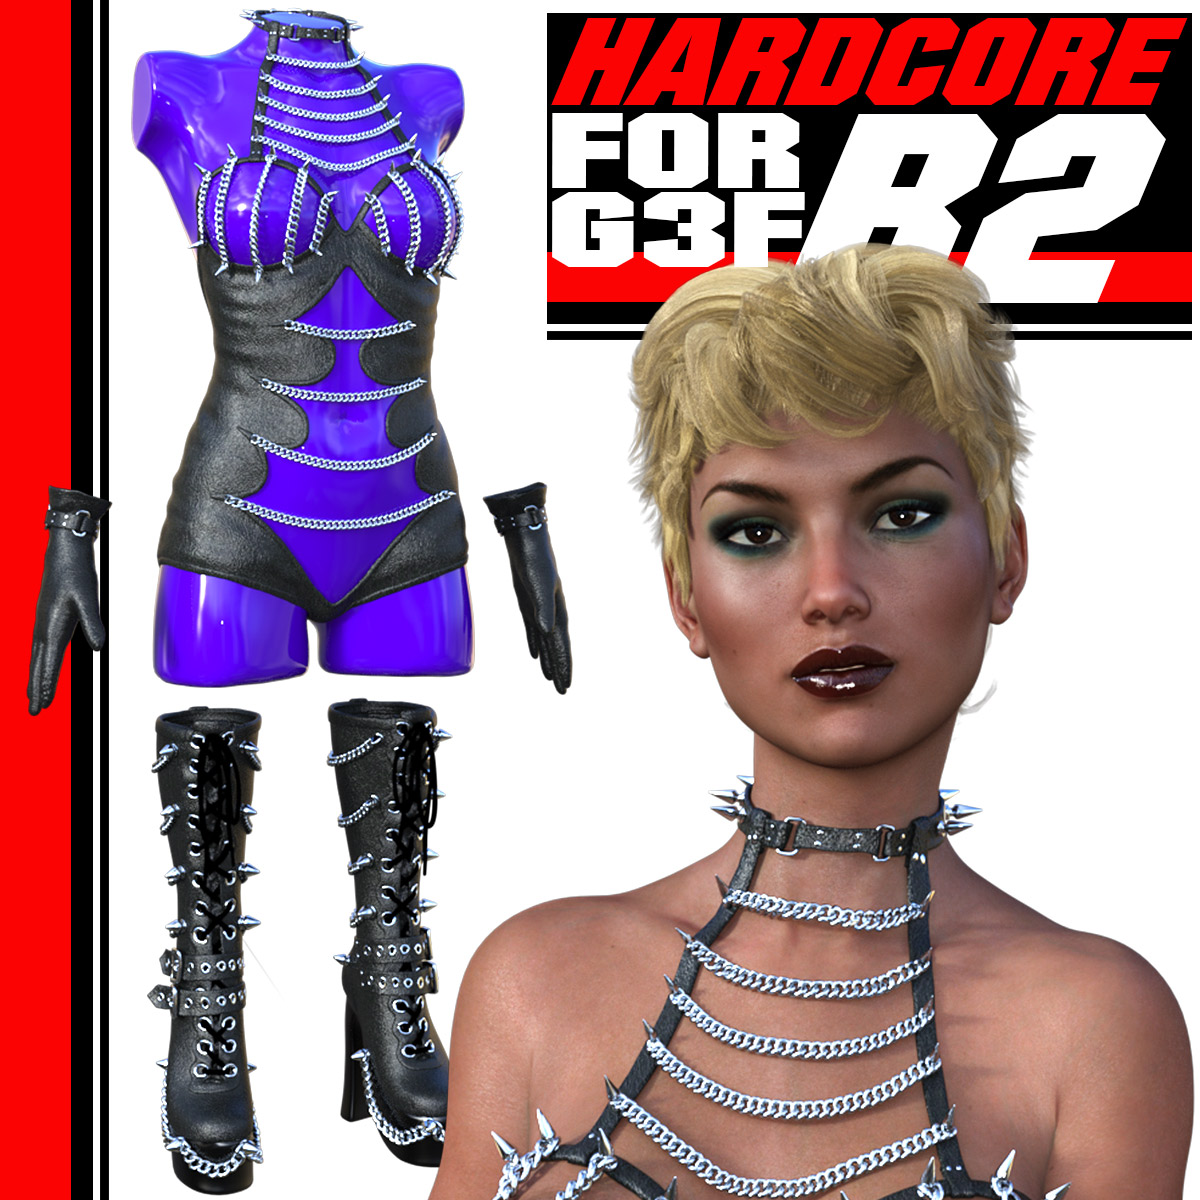 HARDCORE-R2 for G3 females